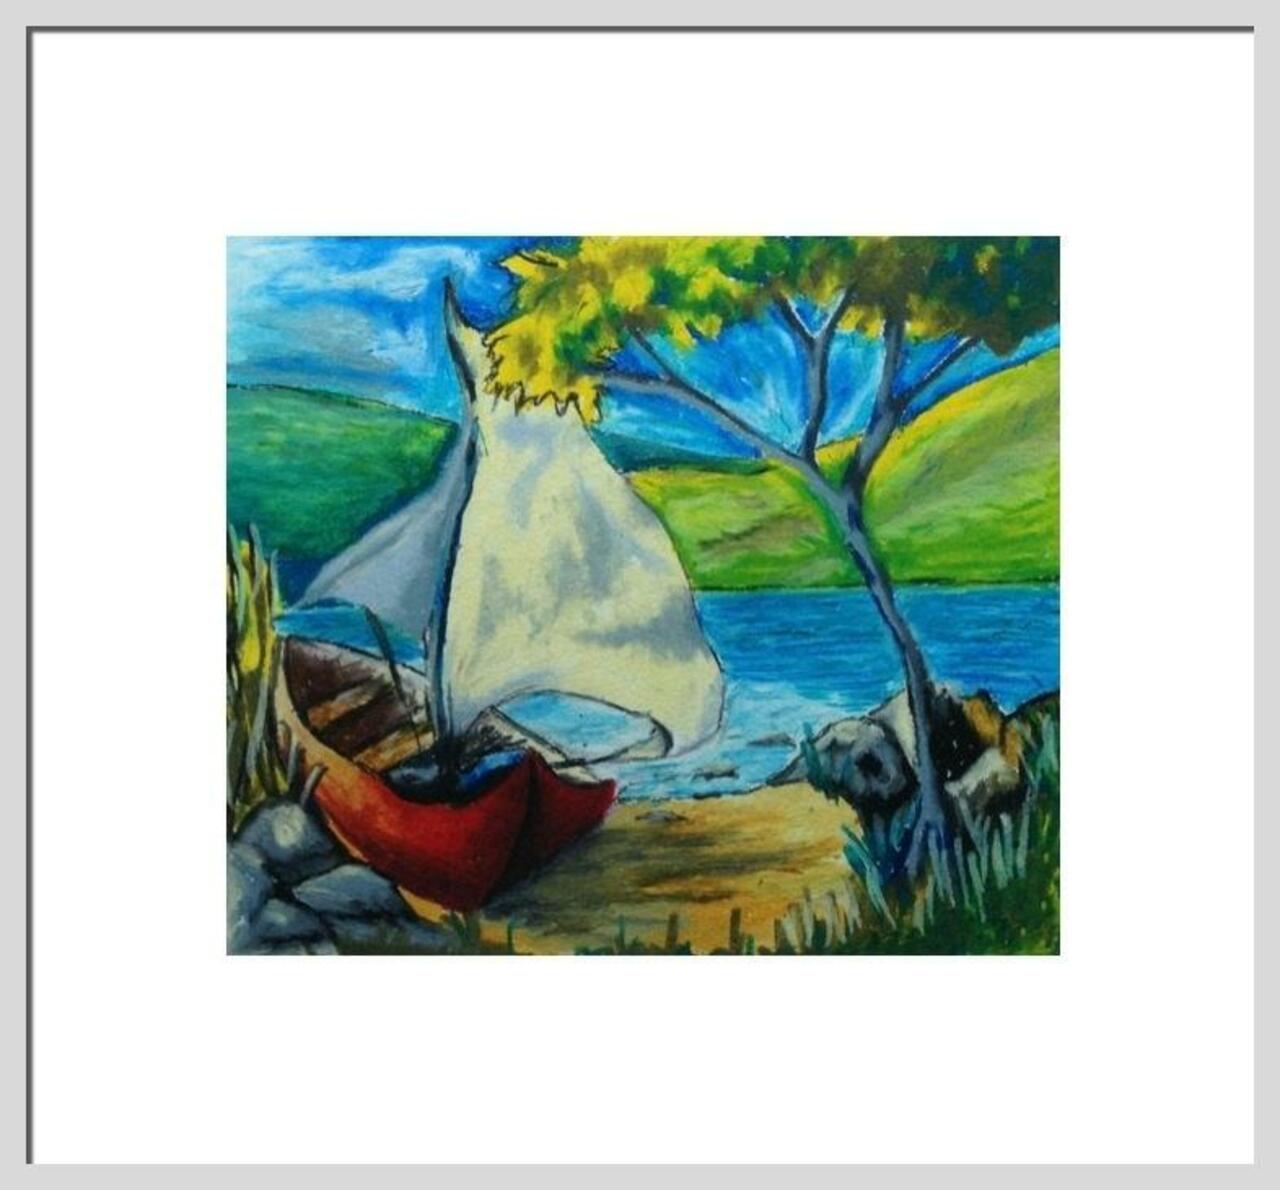 RT @Nickyspaulding: Art Print, Print of Original Landscape, Seascape, Green and Blue Paint… https://www.etsy.com/listing/154936109/art-print-print-of-original-landscape?utm_source=etsyfu&utm_medium=api&utm_campaign=api #Etsy #GreenPainting http://t.co/GStapFLsG7